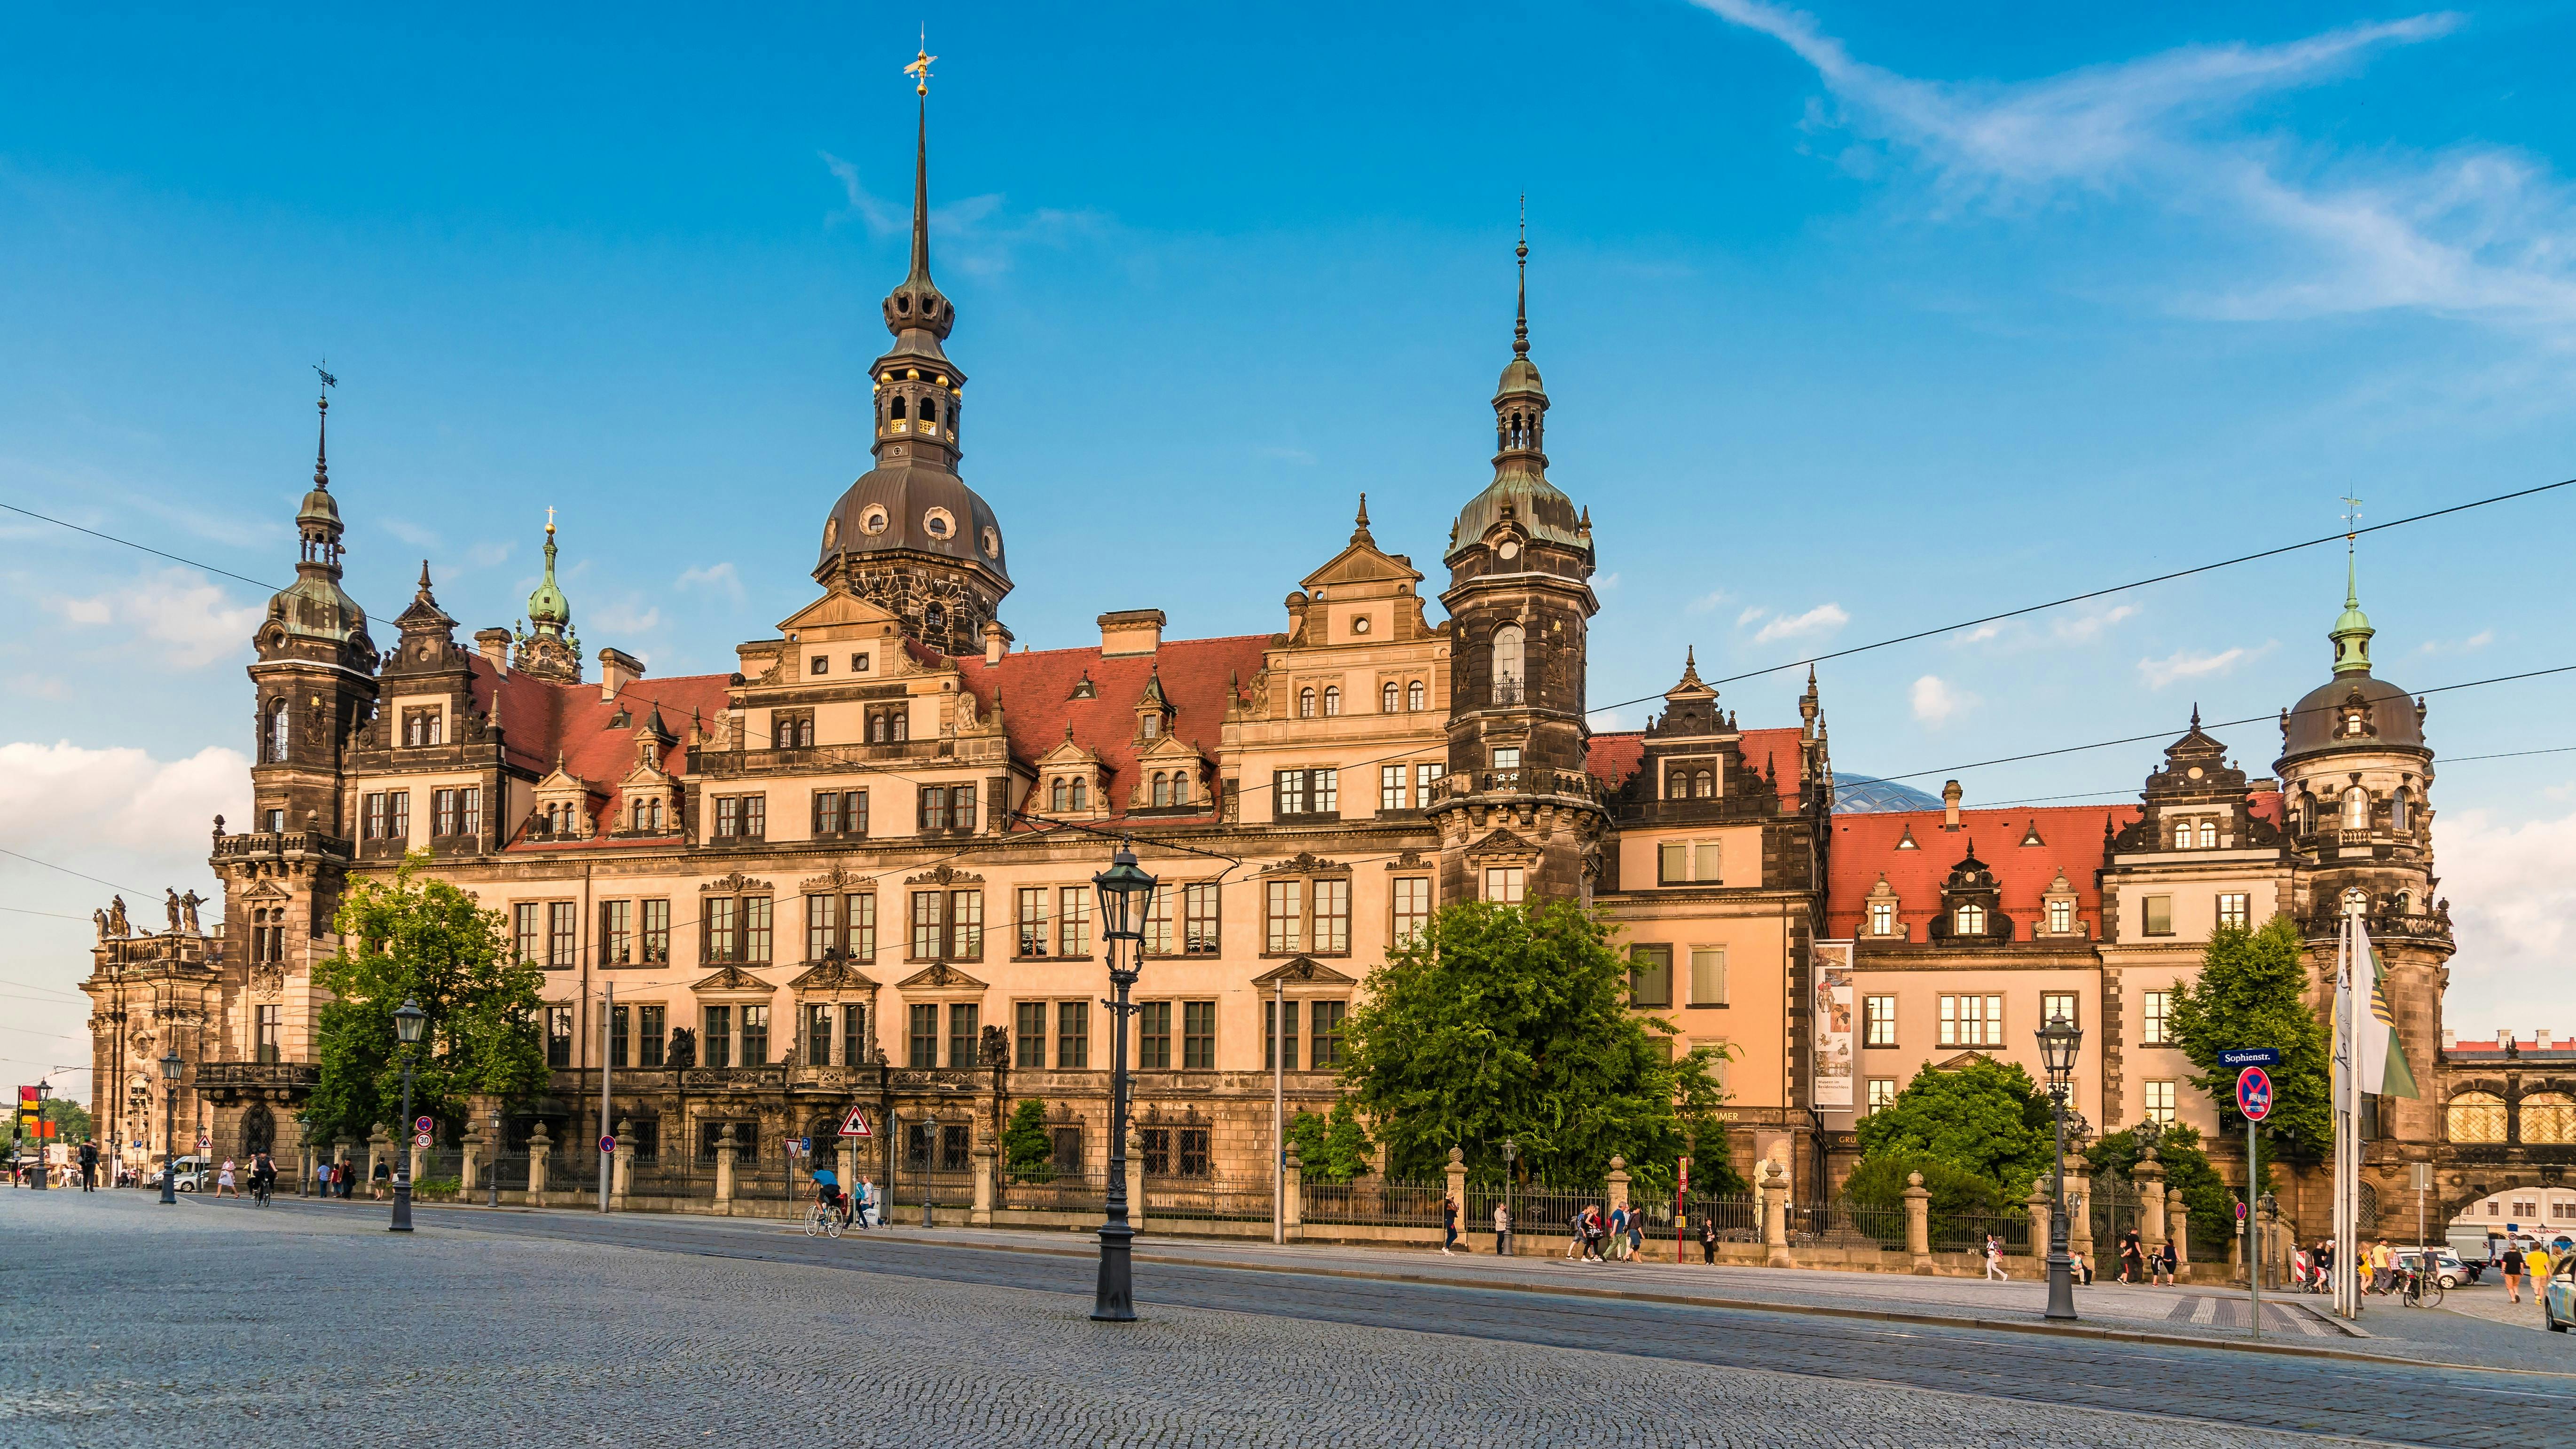 Visita guiada pelo Palácio residencial de Dresden com a nova abóboda verde